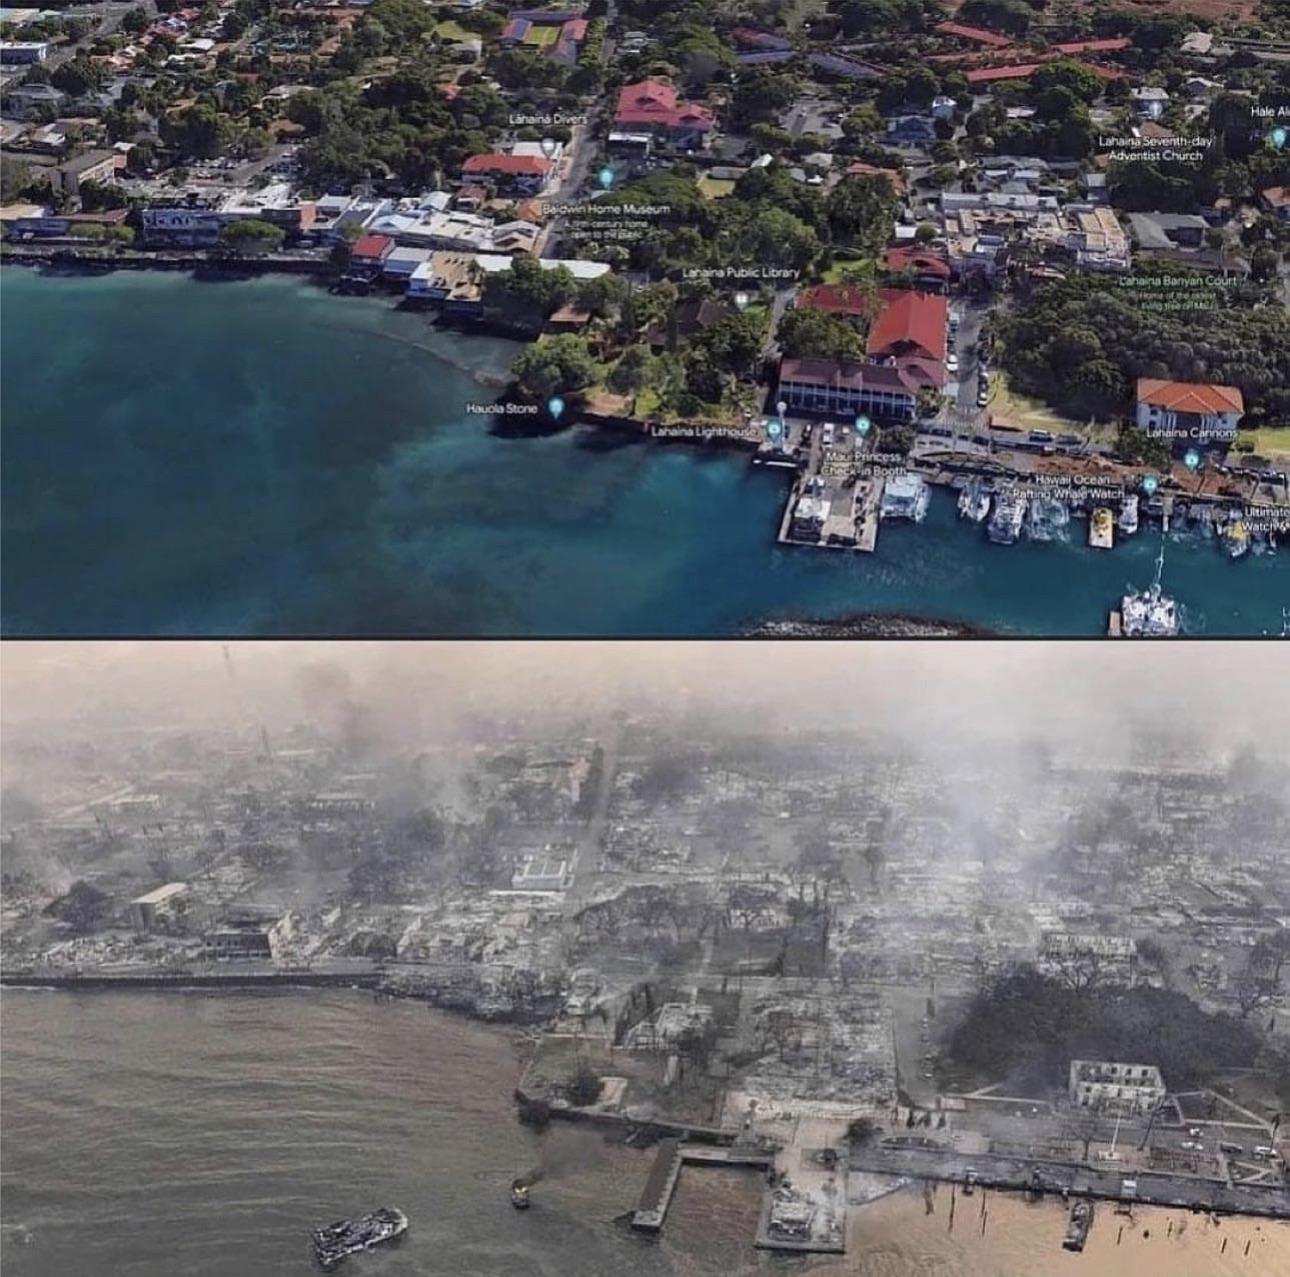 The destruction of Maui fires